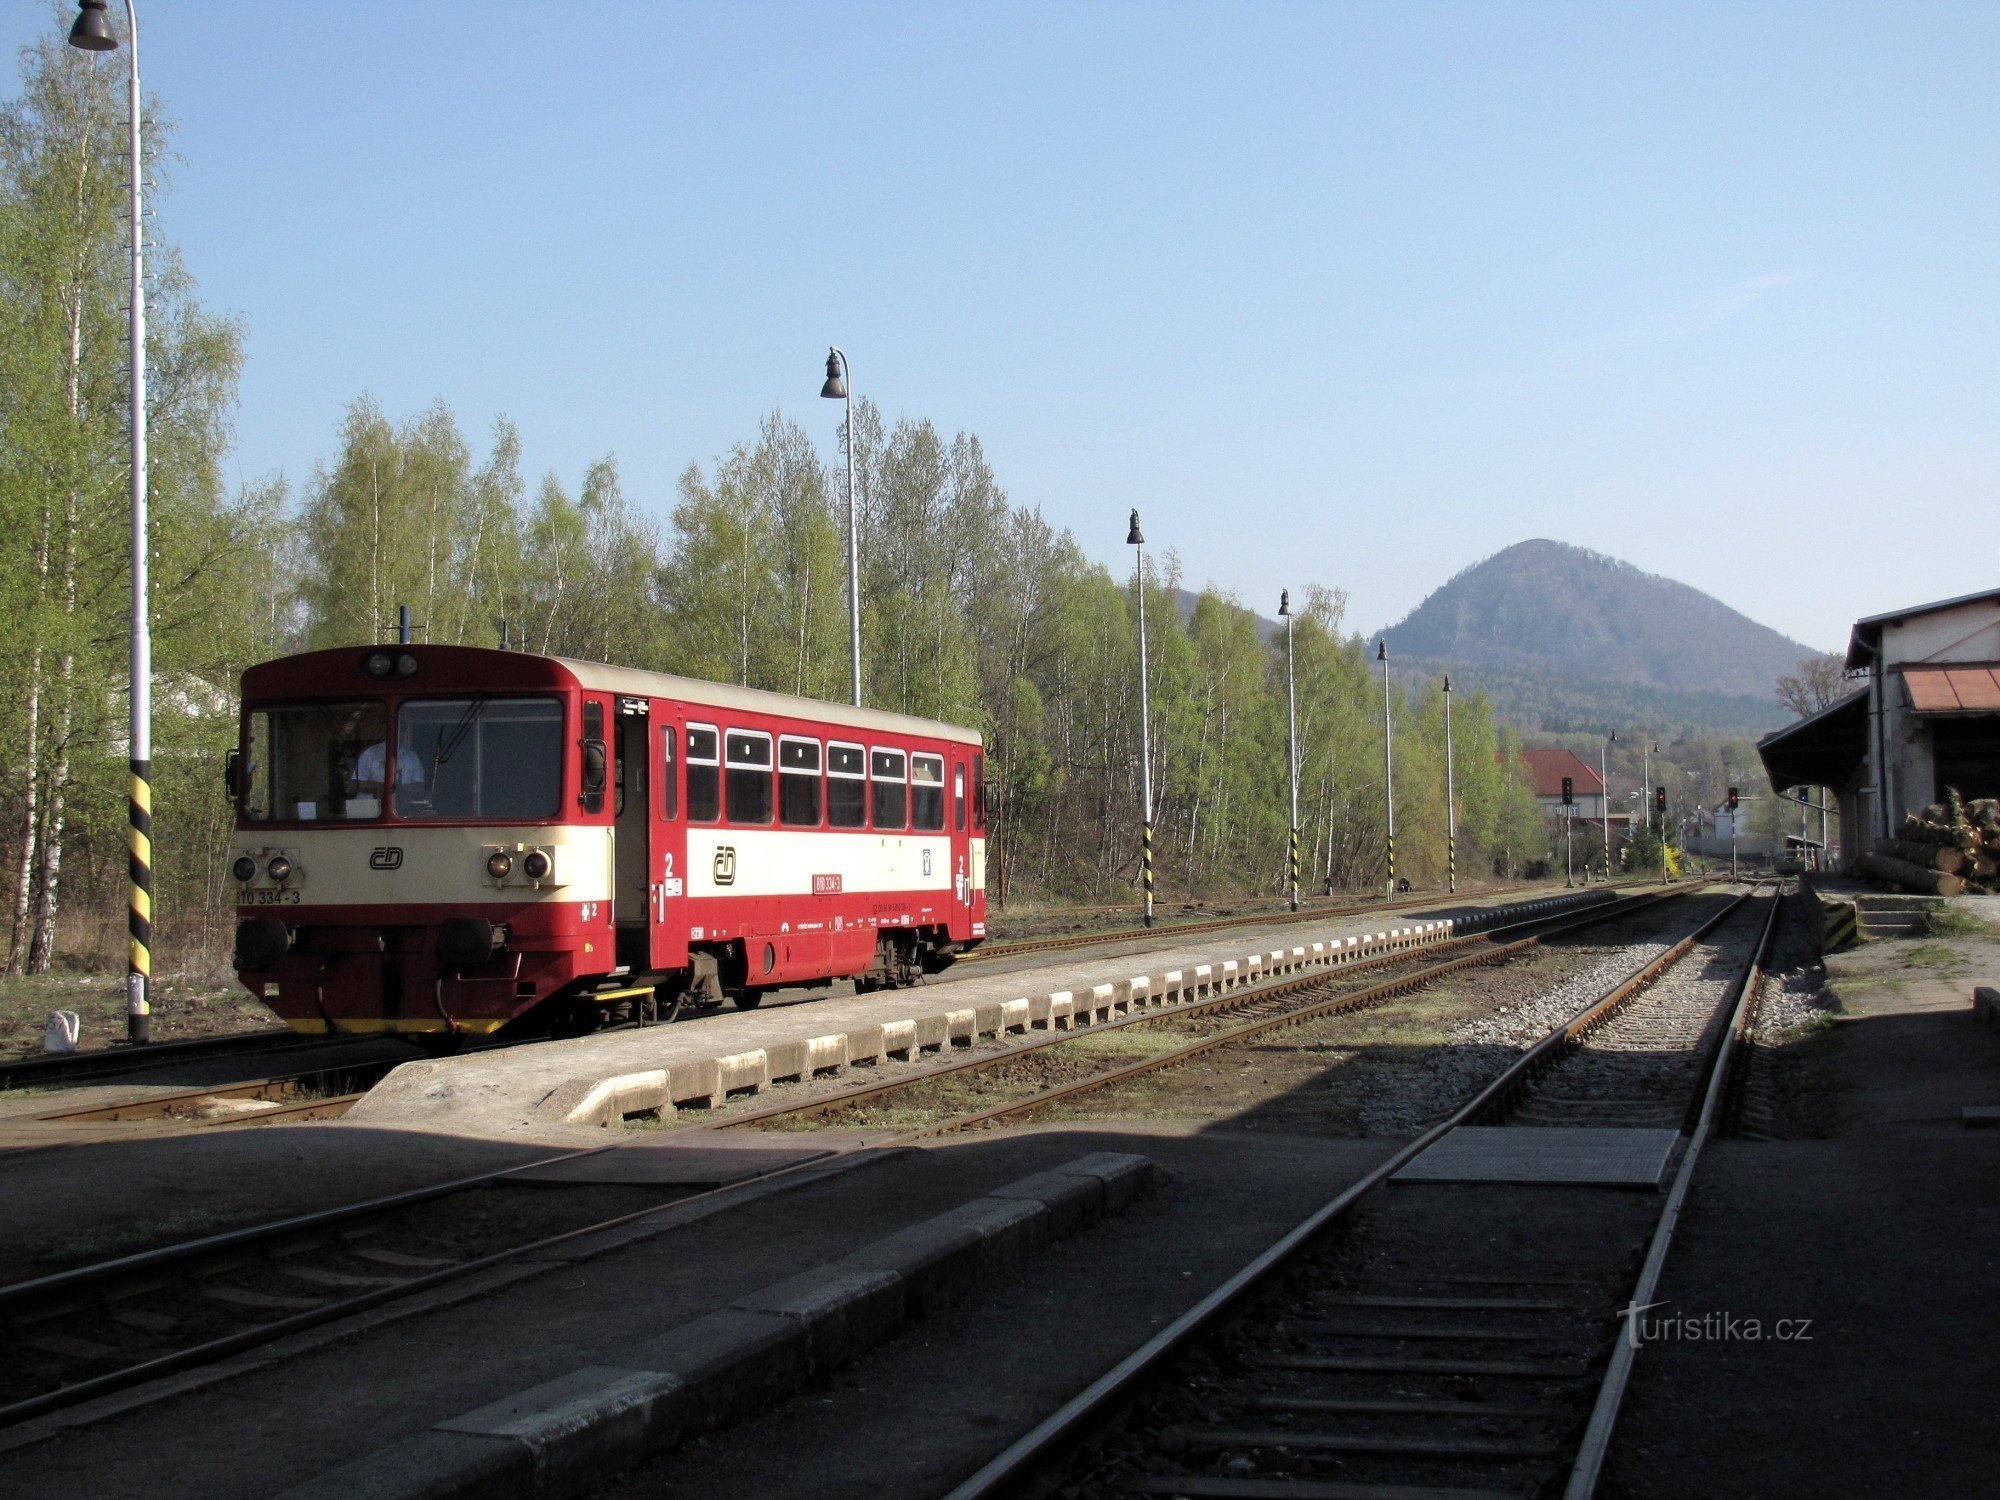 Platformă, muntele Klíč în fundal